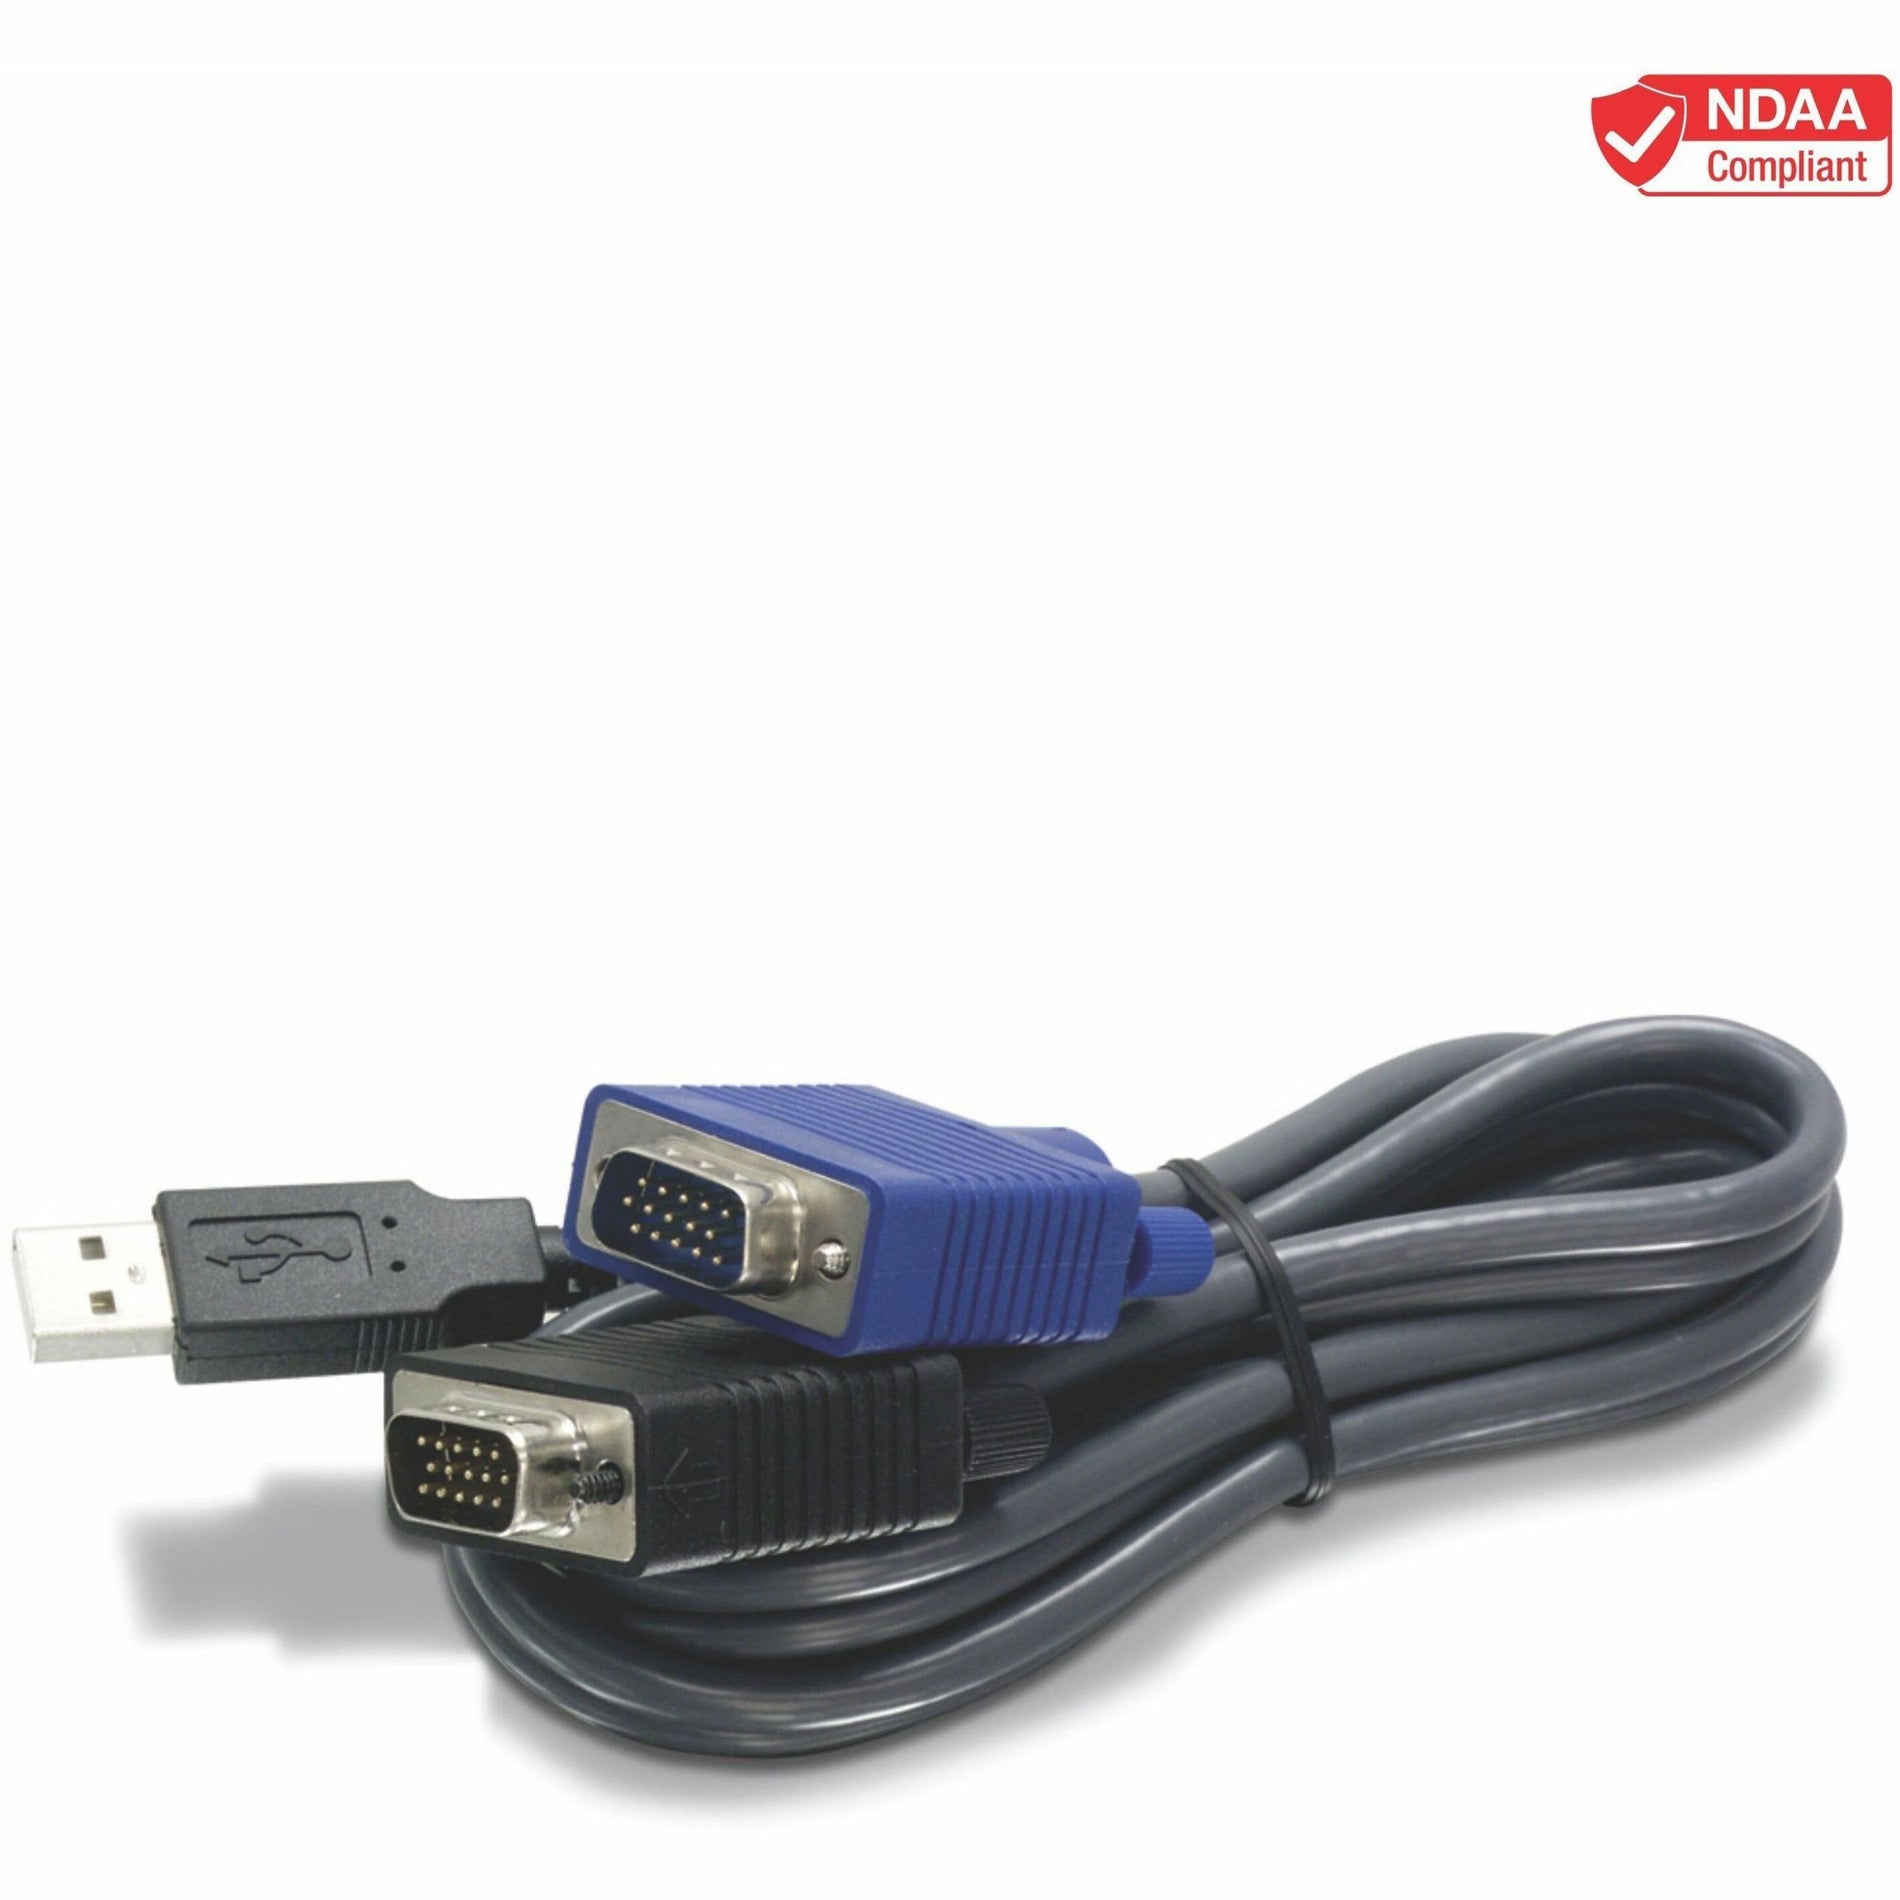 Câble USB TRENDnet TK-CU10 de 10 pieds Connectez les ordinateurs avec des ports VGA et USB Marque: TRENDnet